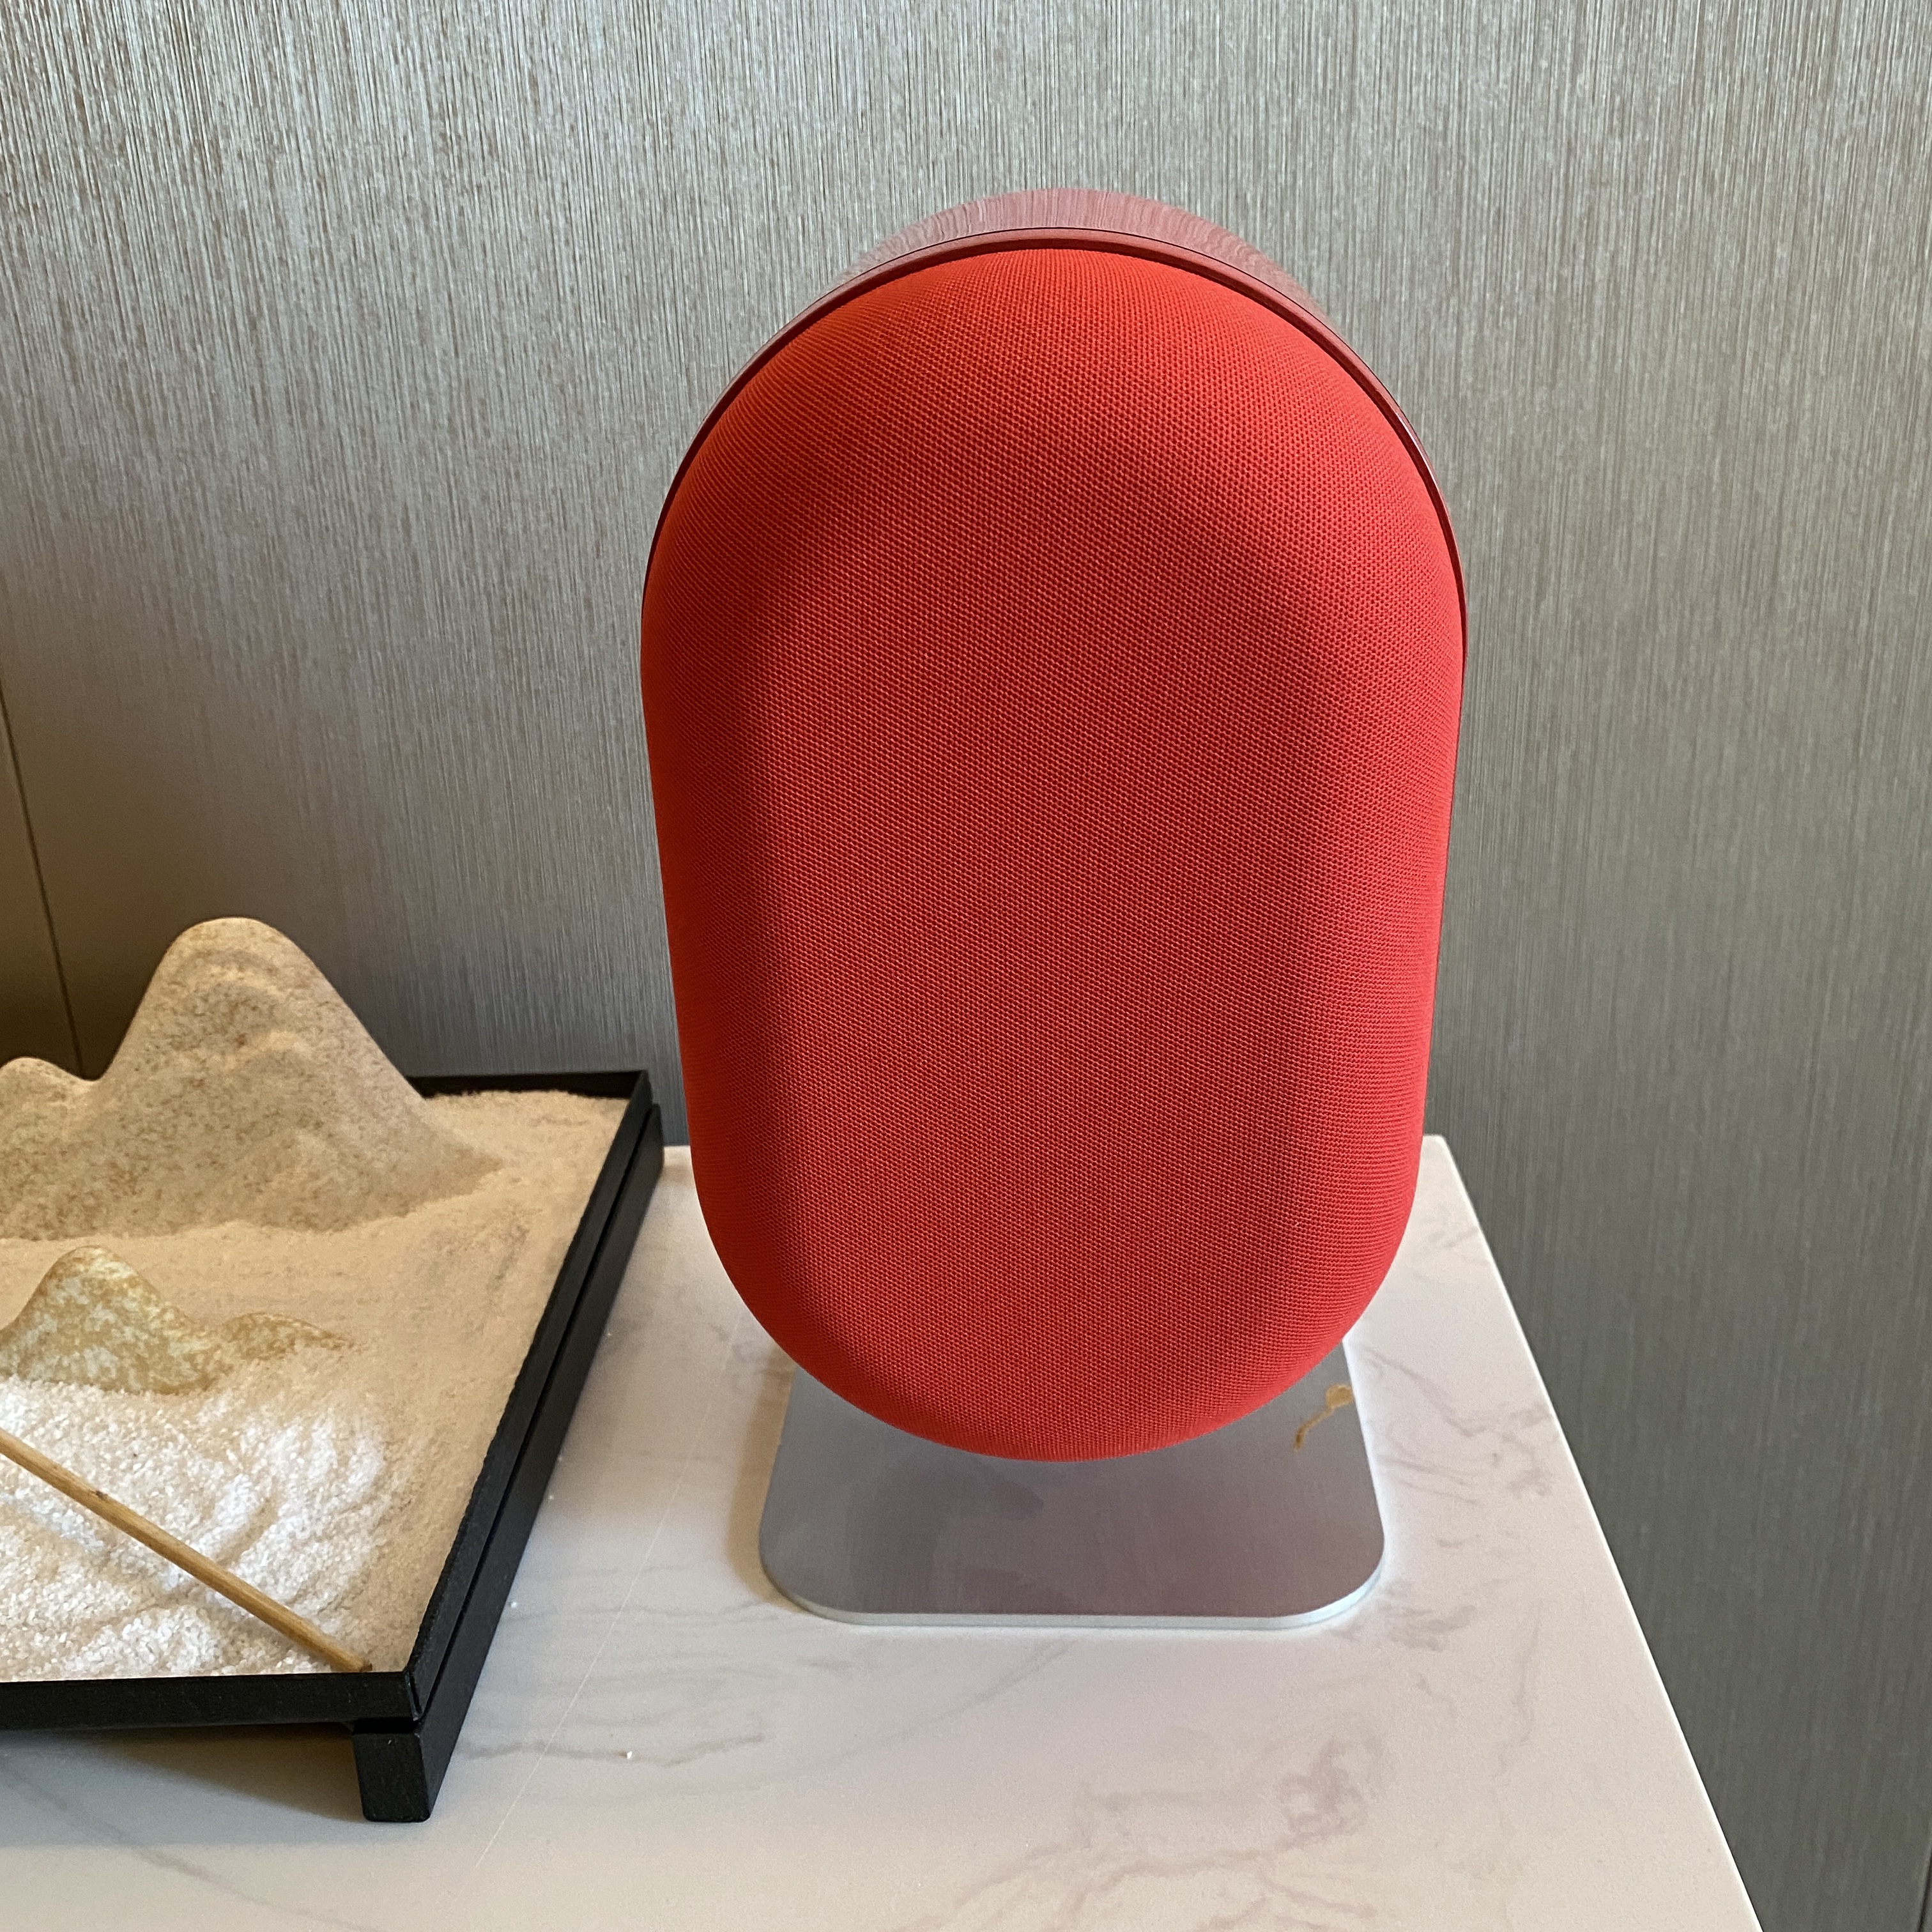  Wifi Smart Speaker